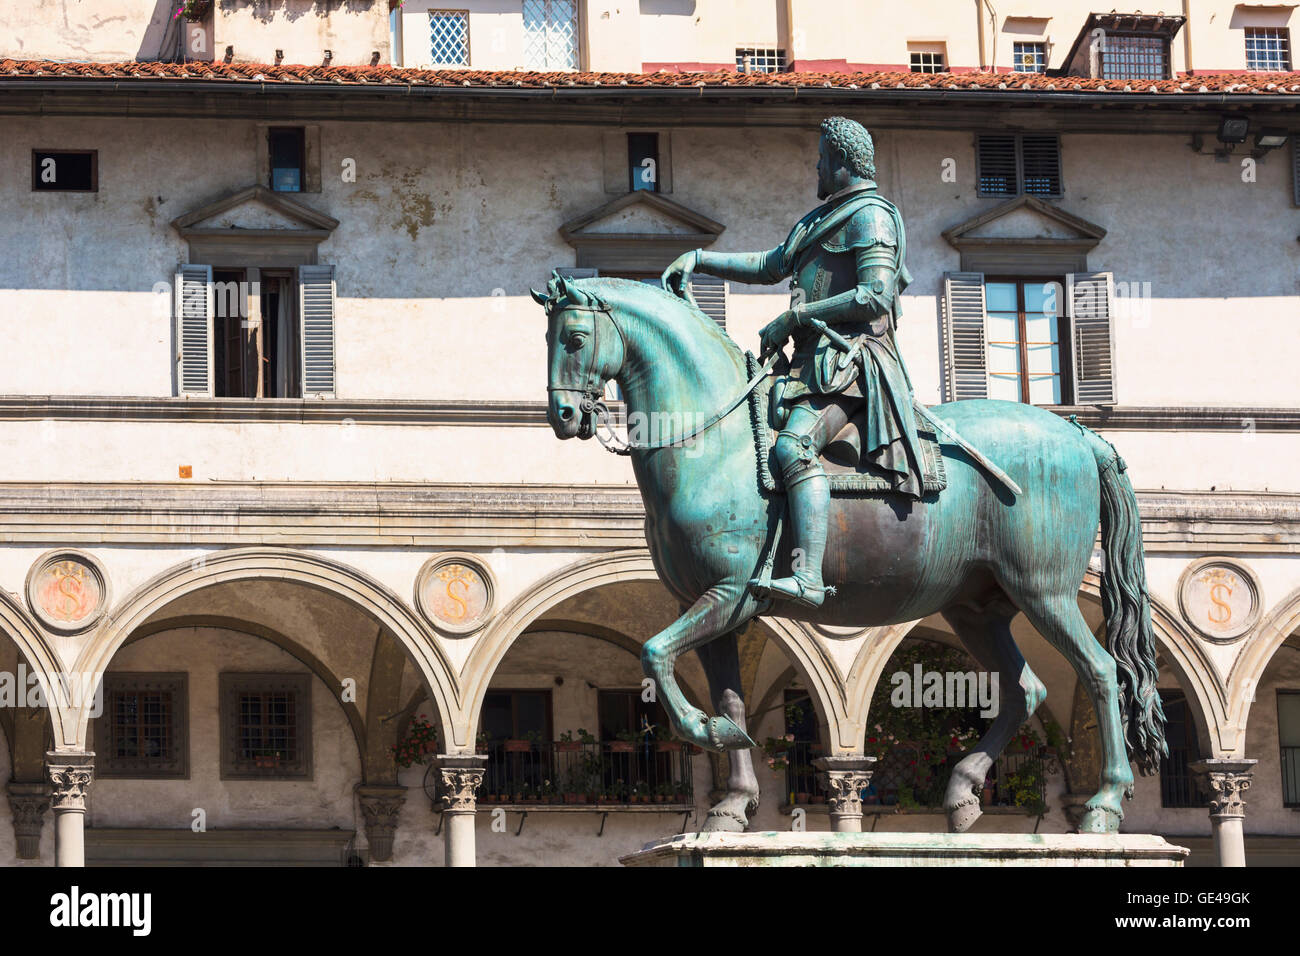 Firenze, Provincia di Firenze, Toscana, Italia. Equestre in bronzo statua di Ferdinando I de' Medici Granduca di Toscana. Foto Stock